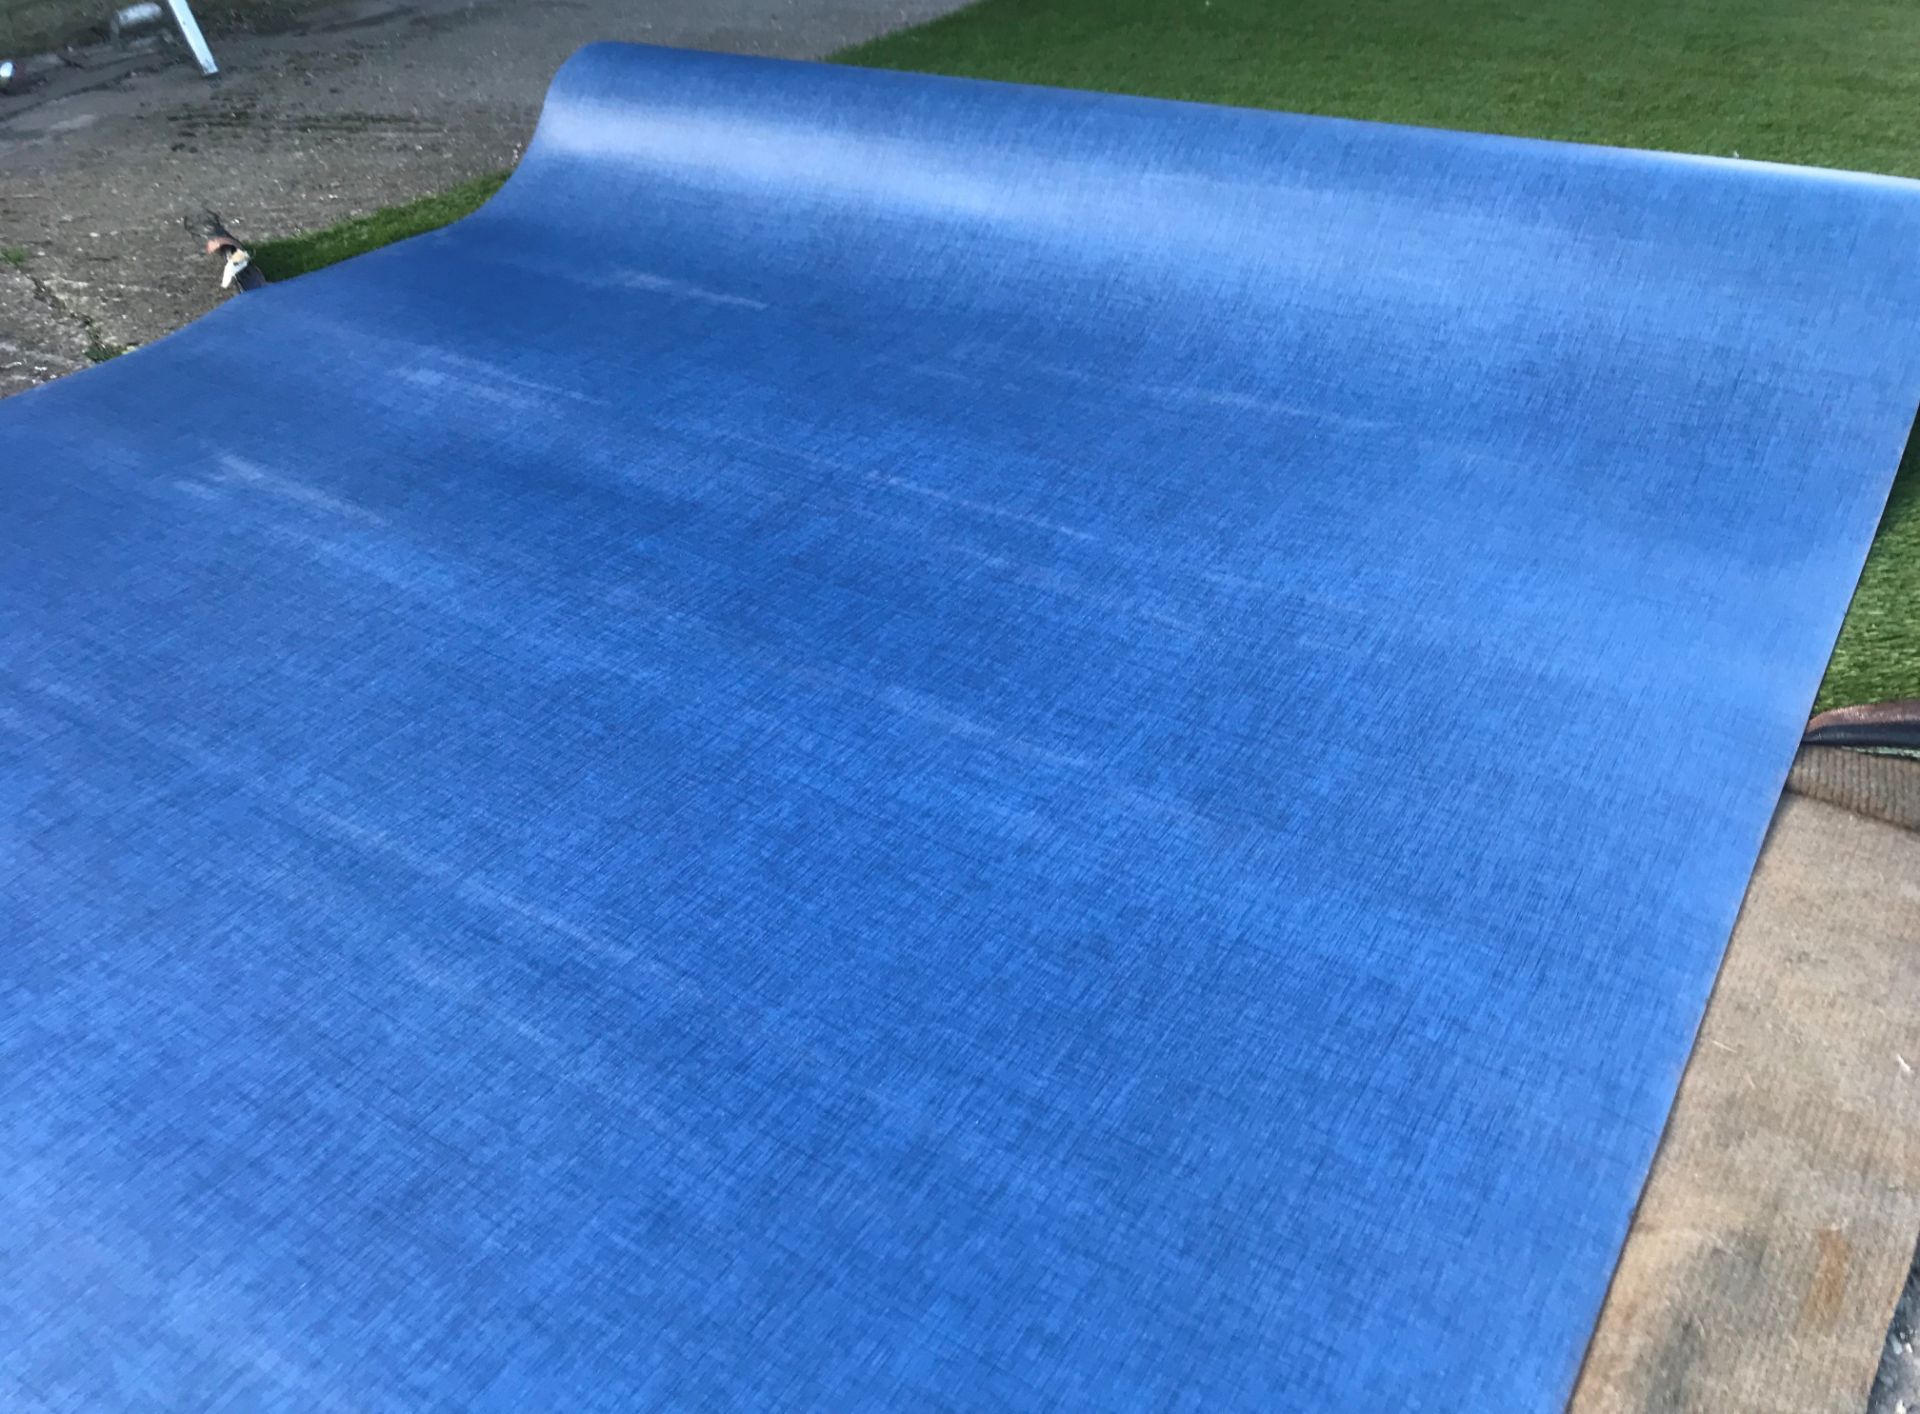 1 x GERFLOR Tarkett Commercial Grade Safety Flooring In Dark Blue -20X2M Roll - Ref: NWF004 -